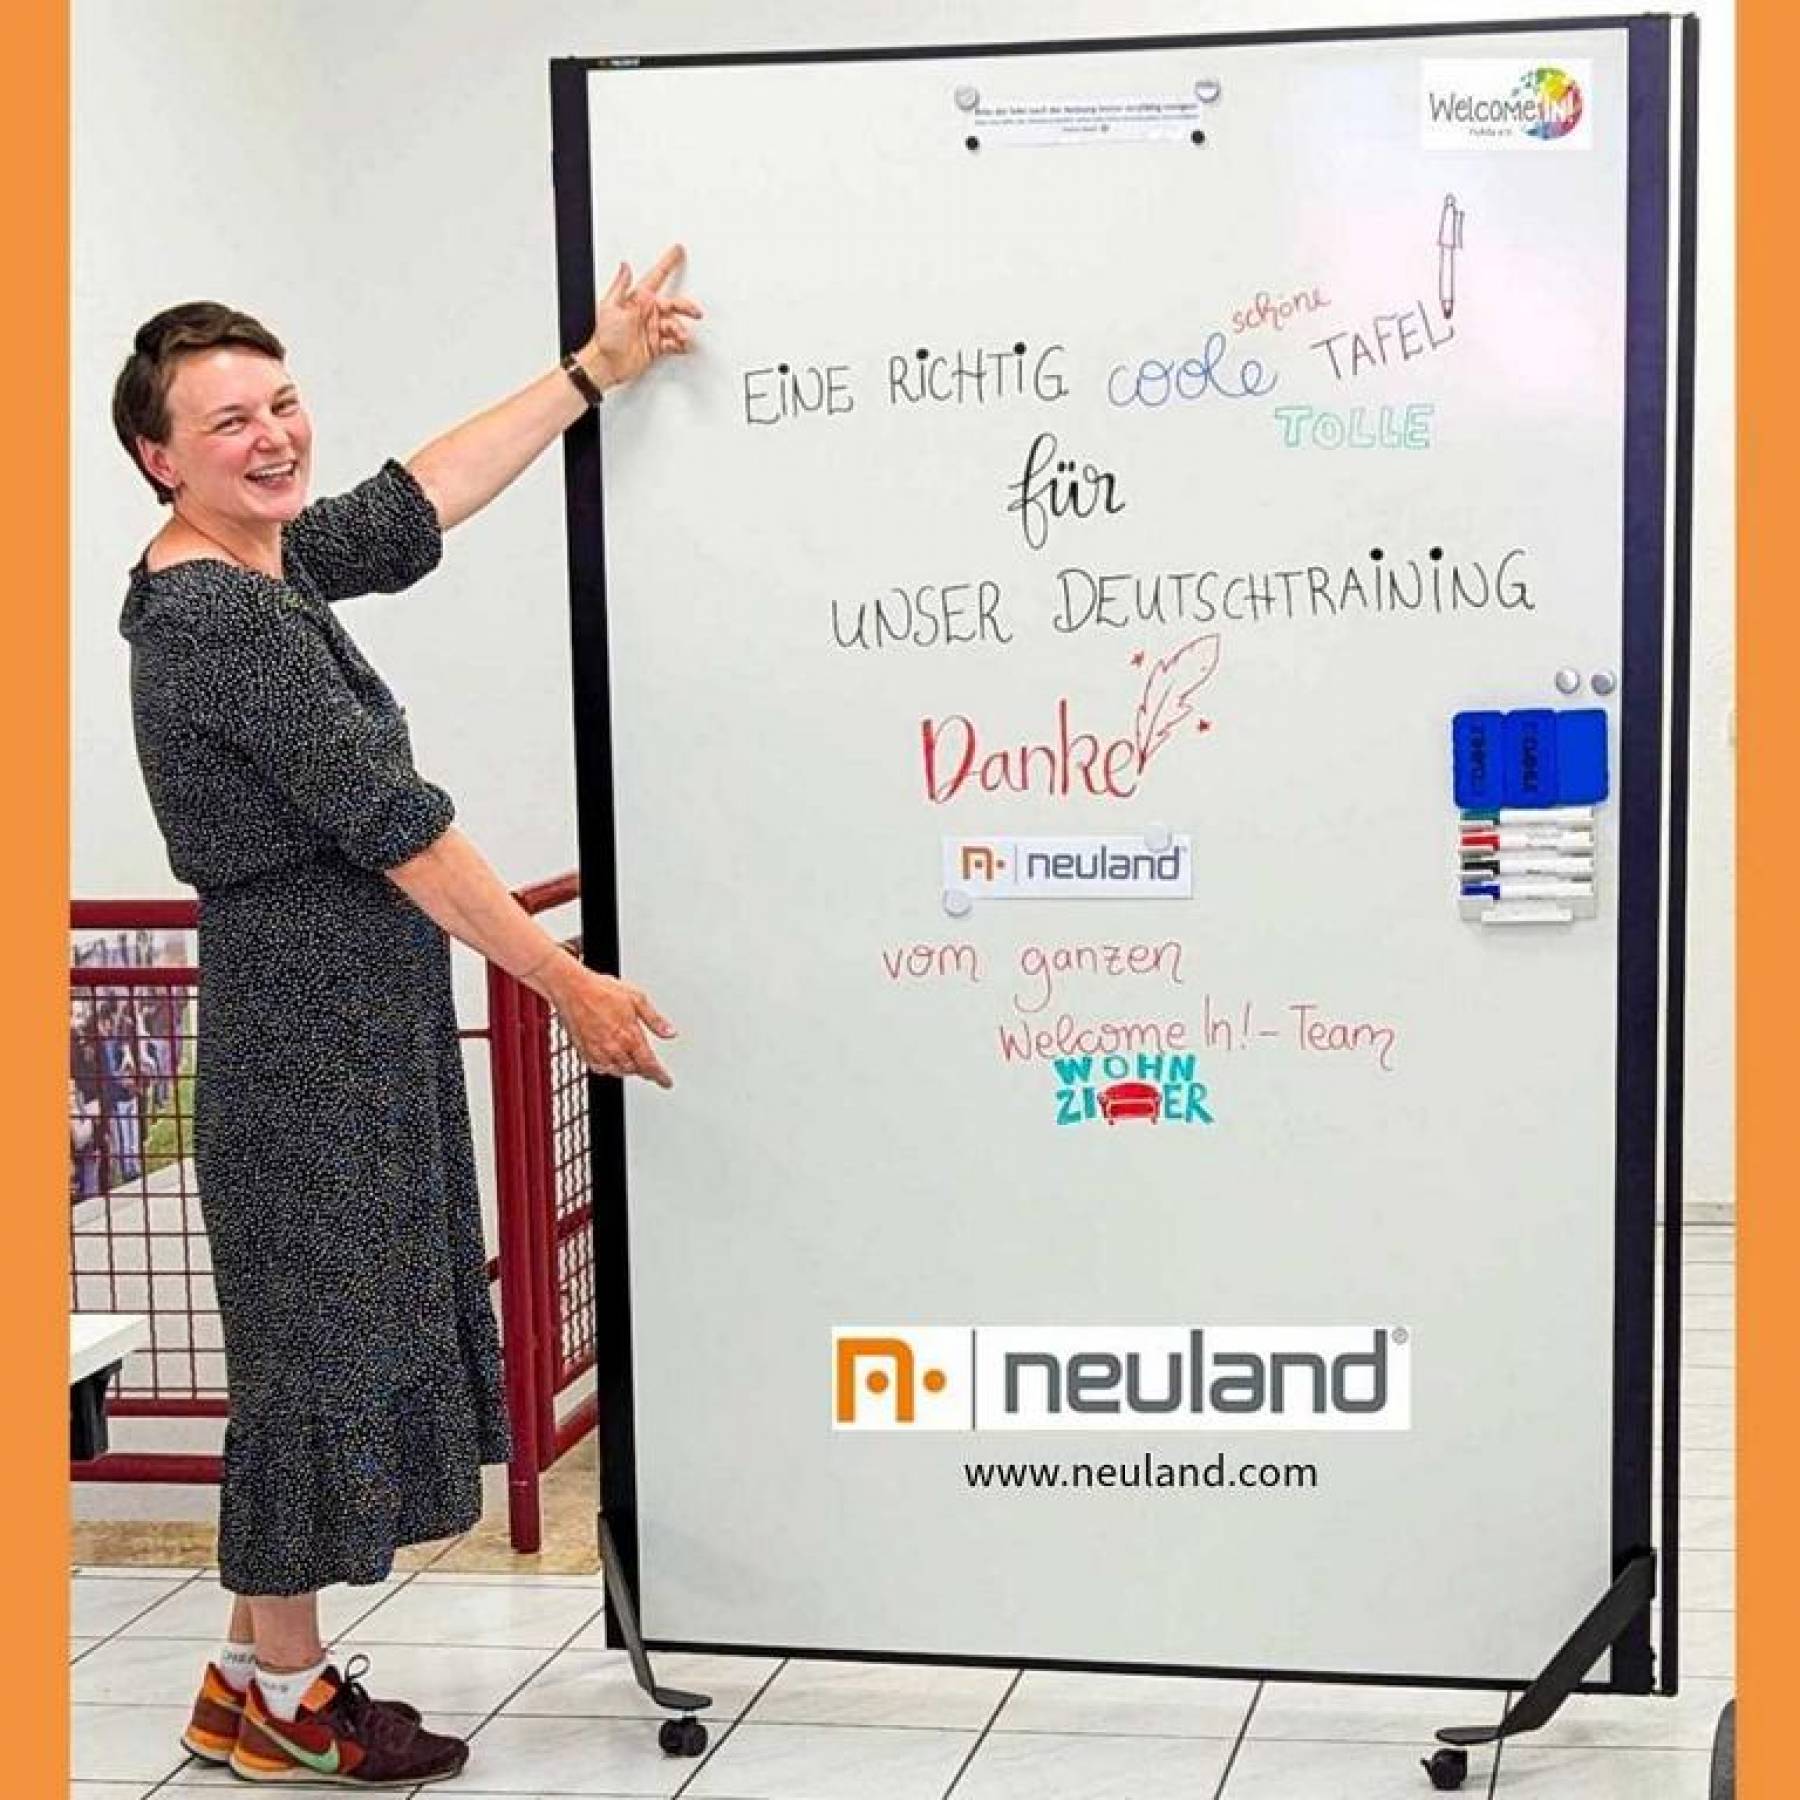 Neuland sponsert uns ein wunderschönes Whiteboard